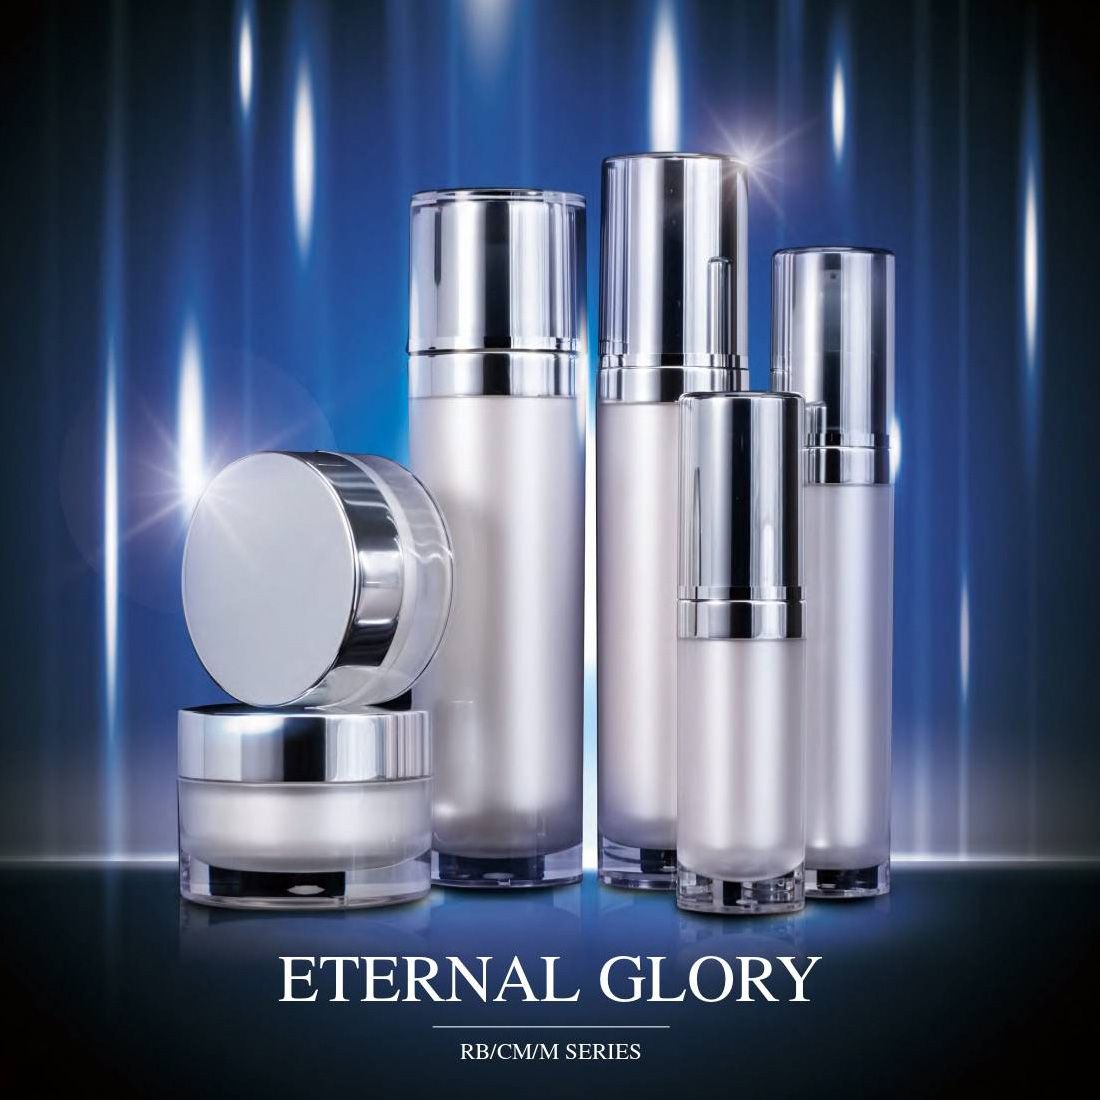 Eternal Glory (embalagens acrílicas luxuosas para cosméticos e cuidados com a pele) Série RB/CM/M